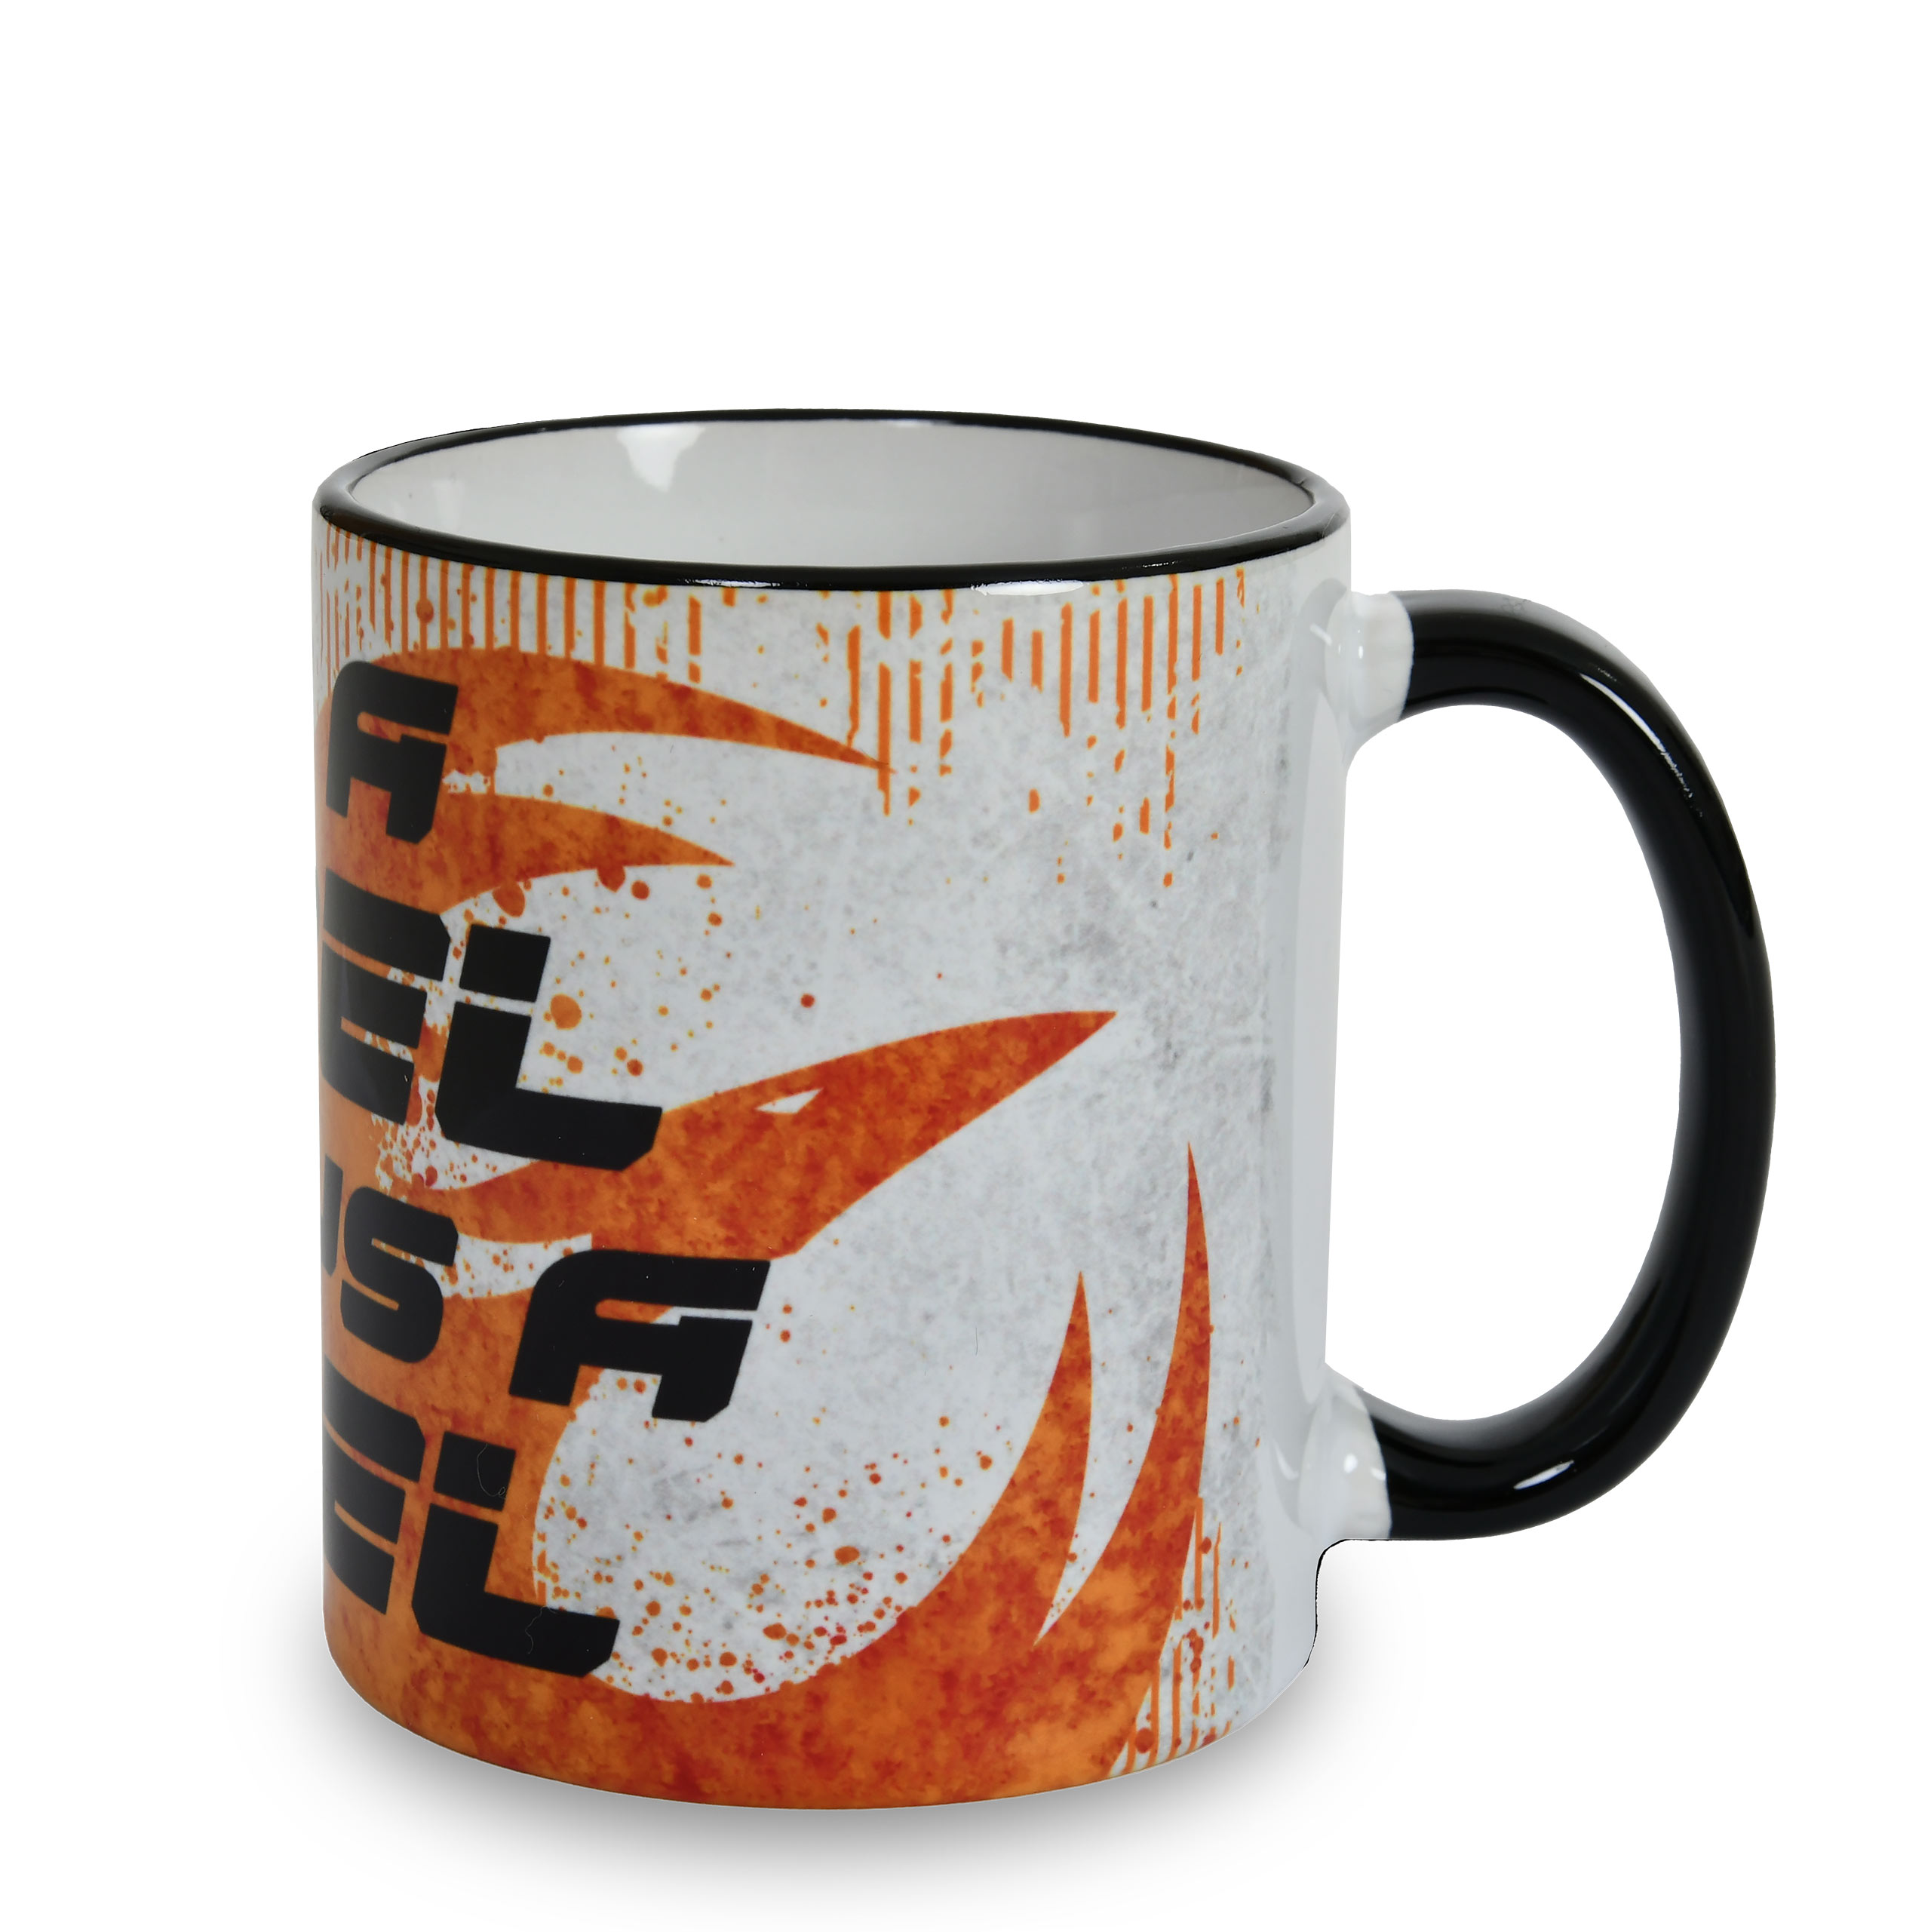 Rebel mug for Star Wars fans